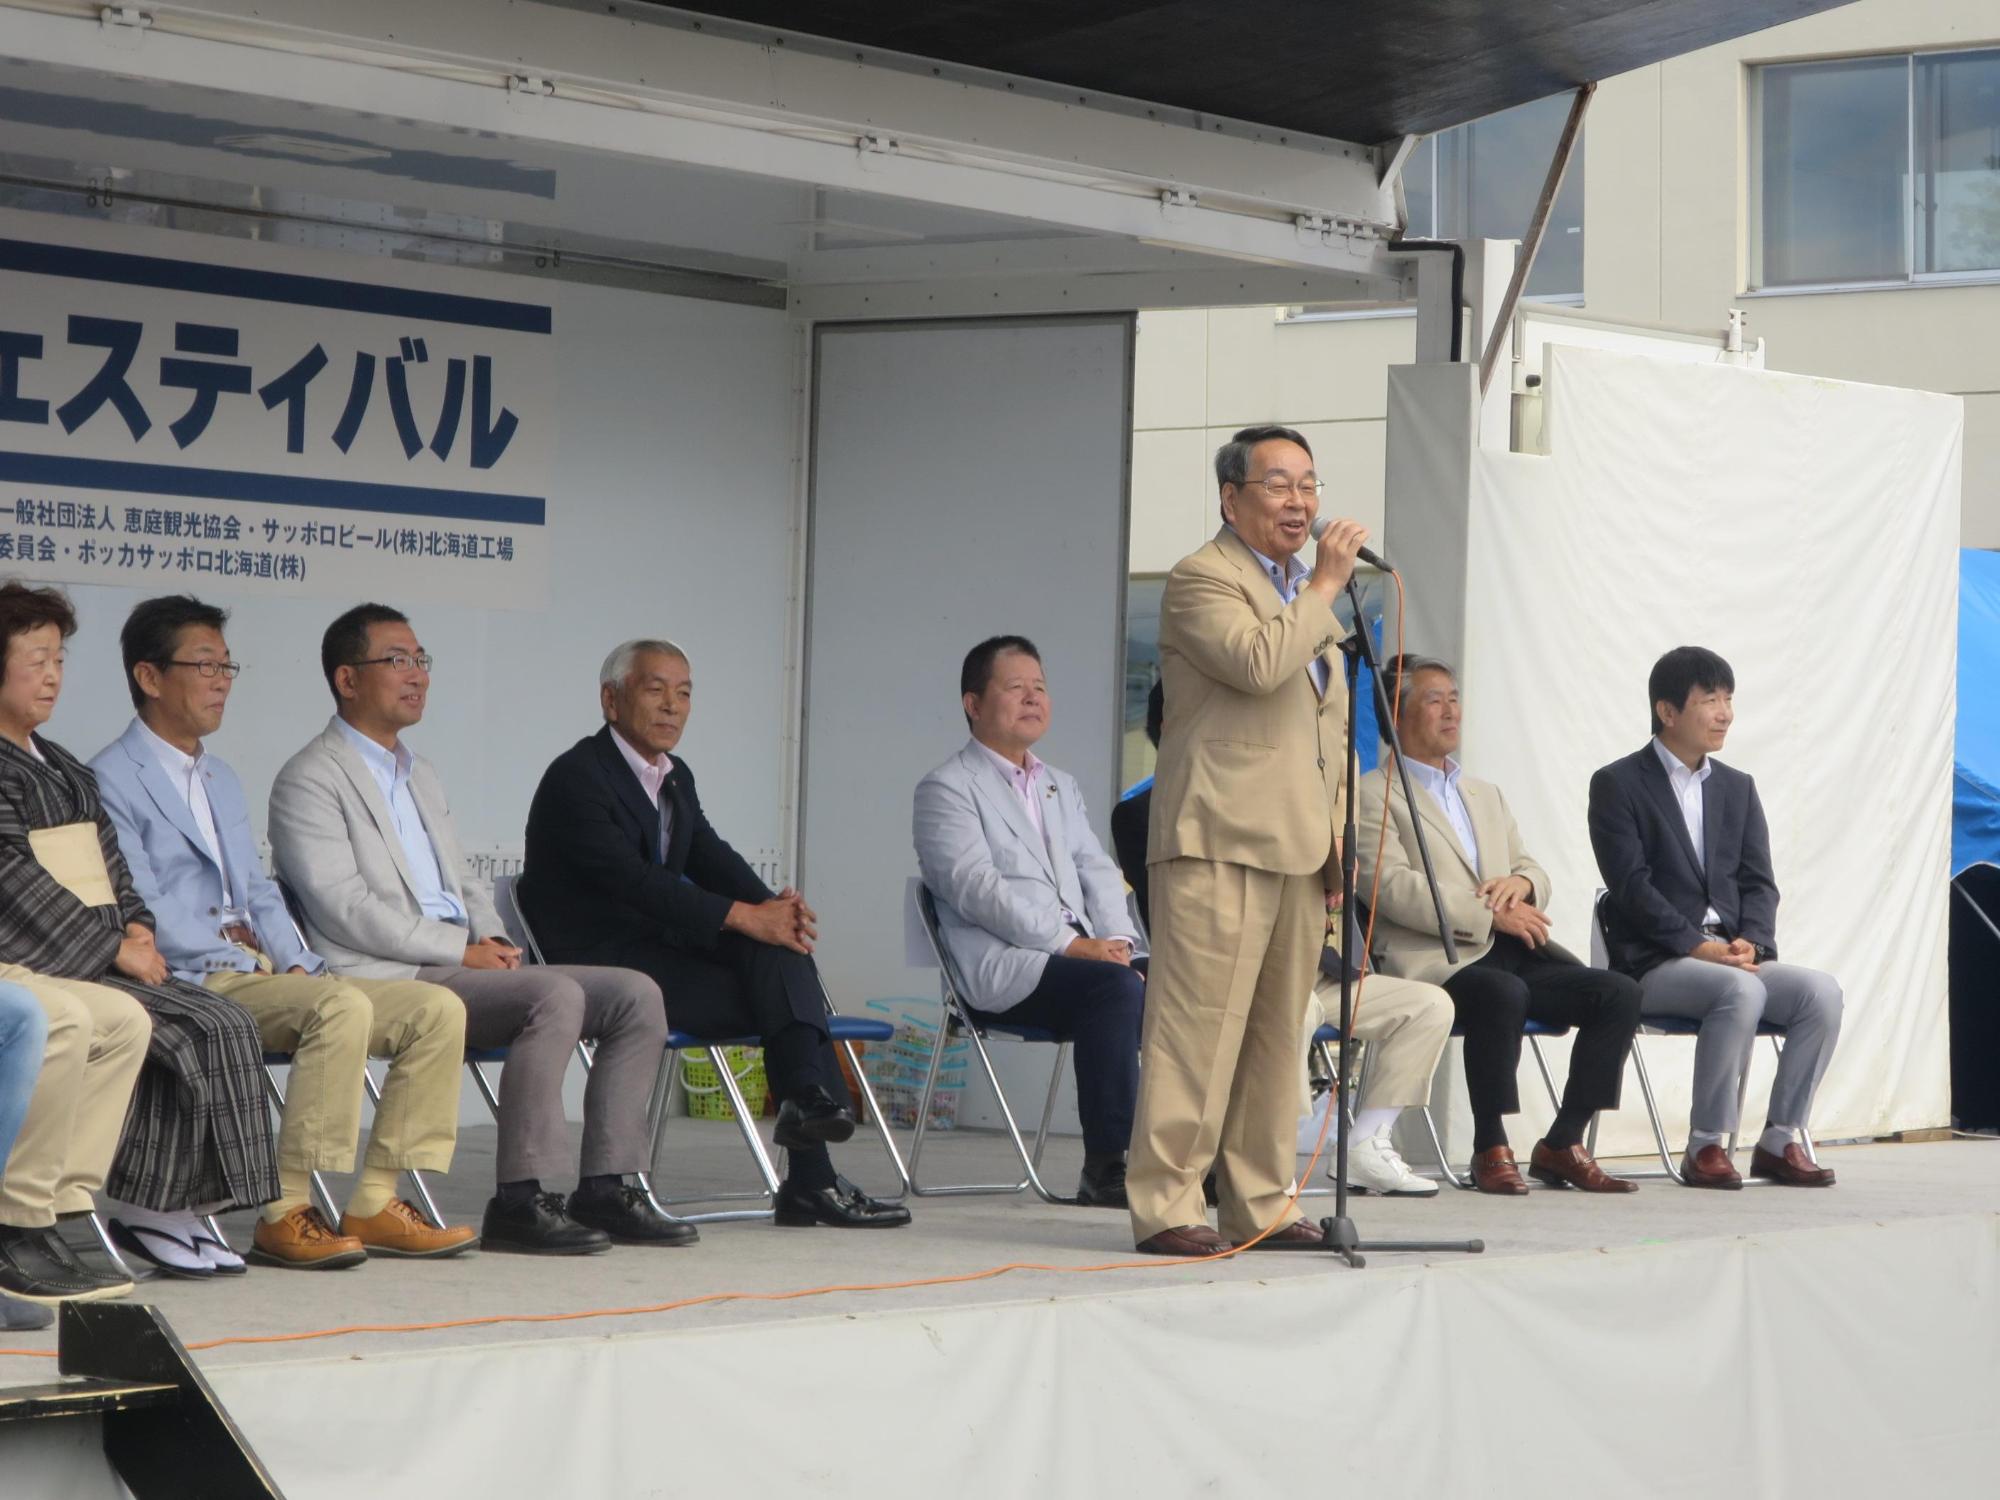 「第13回YEGフェスティバル」にて挨拶をしている原田市長の写真